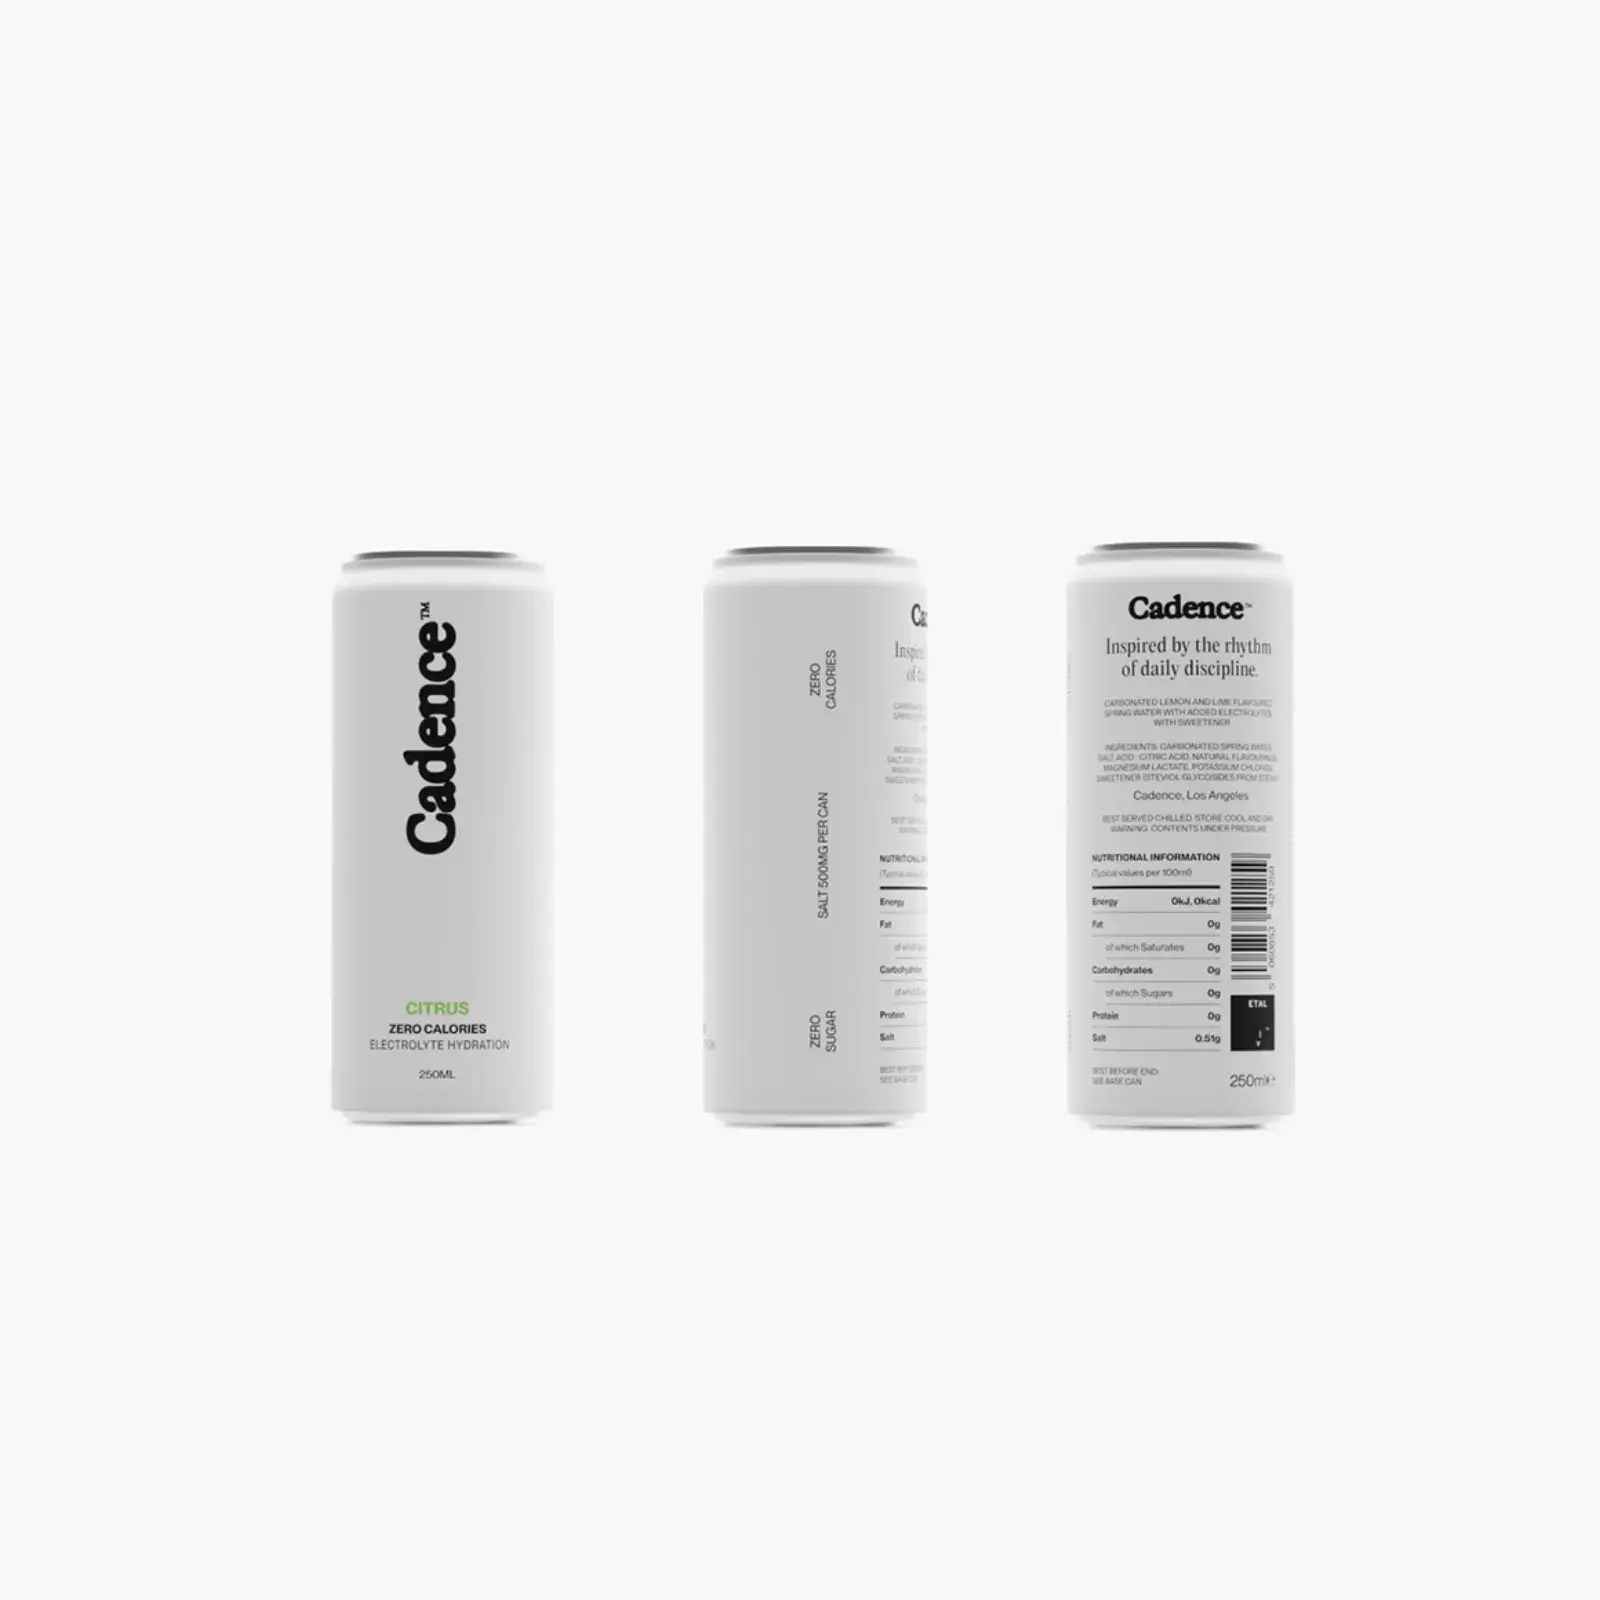 Cadence’s Exquisite Branding & Packaging Design